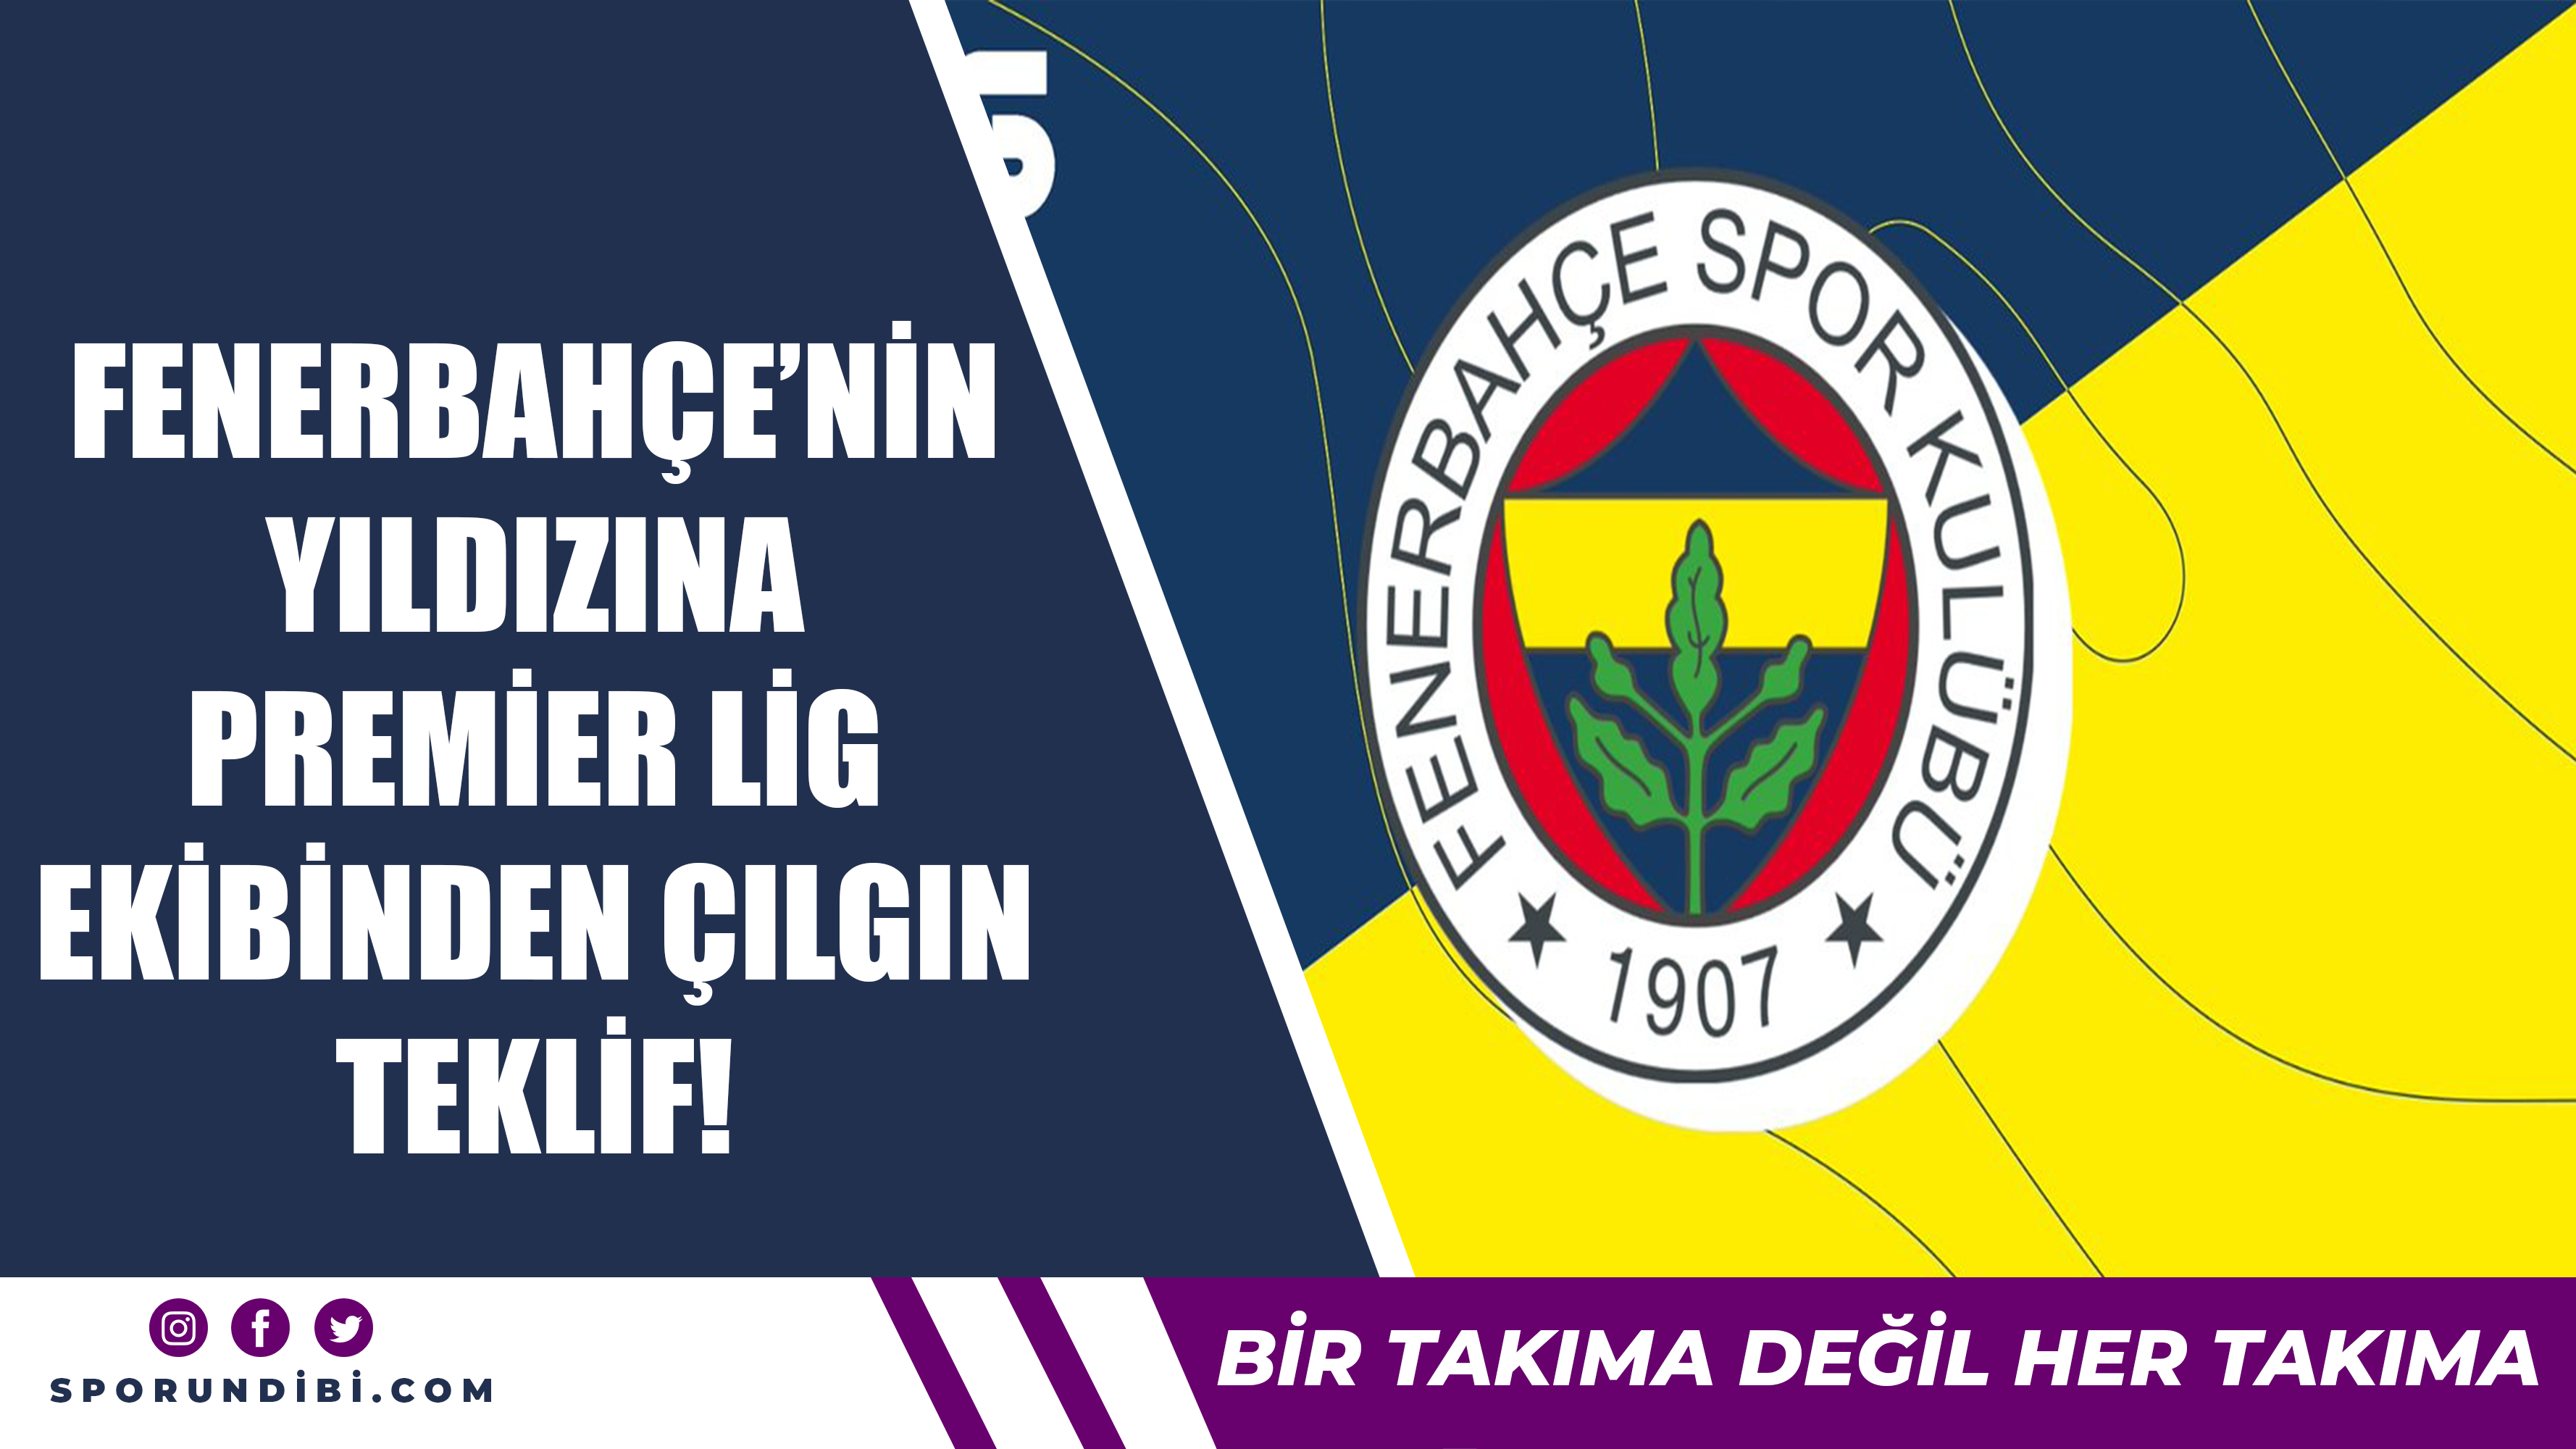 Fenerbahçe'nin yıldızına Premier Lig ekibinden çılgın teklif!